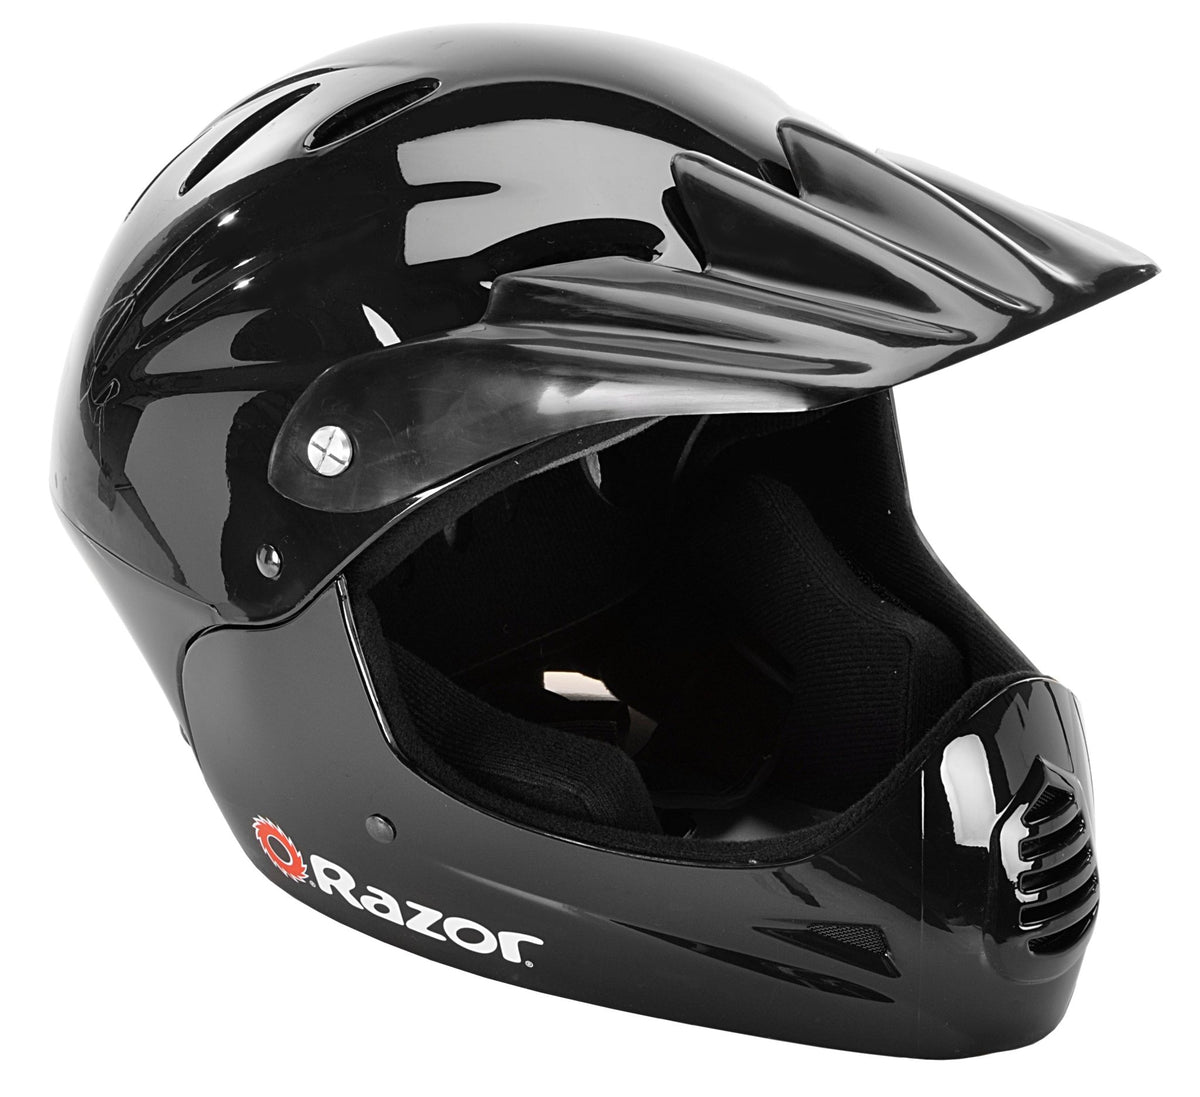 Razor® Full Face Multi-Sport Youth Helmet | For Ages 8+